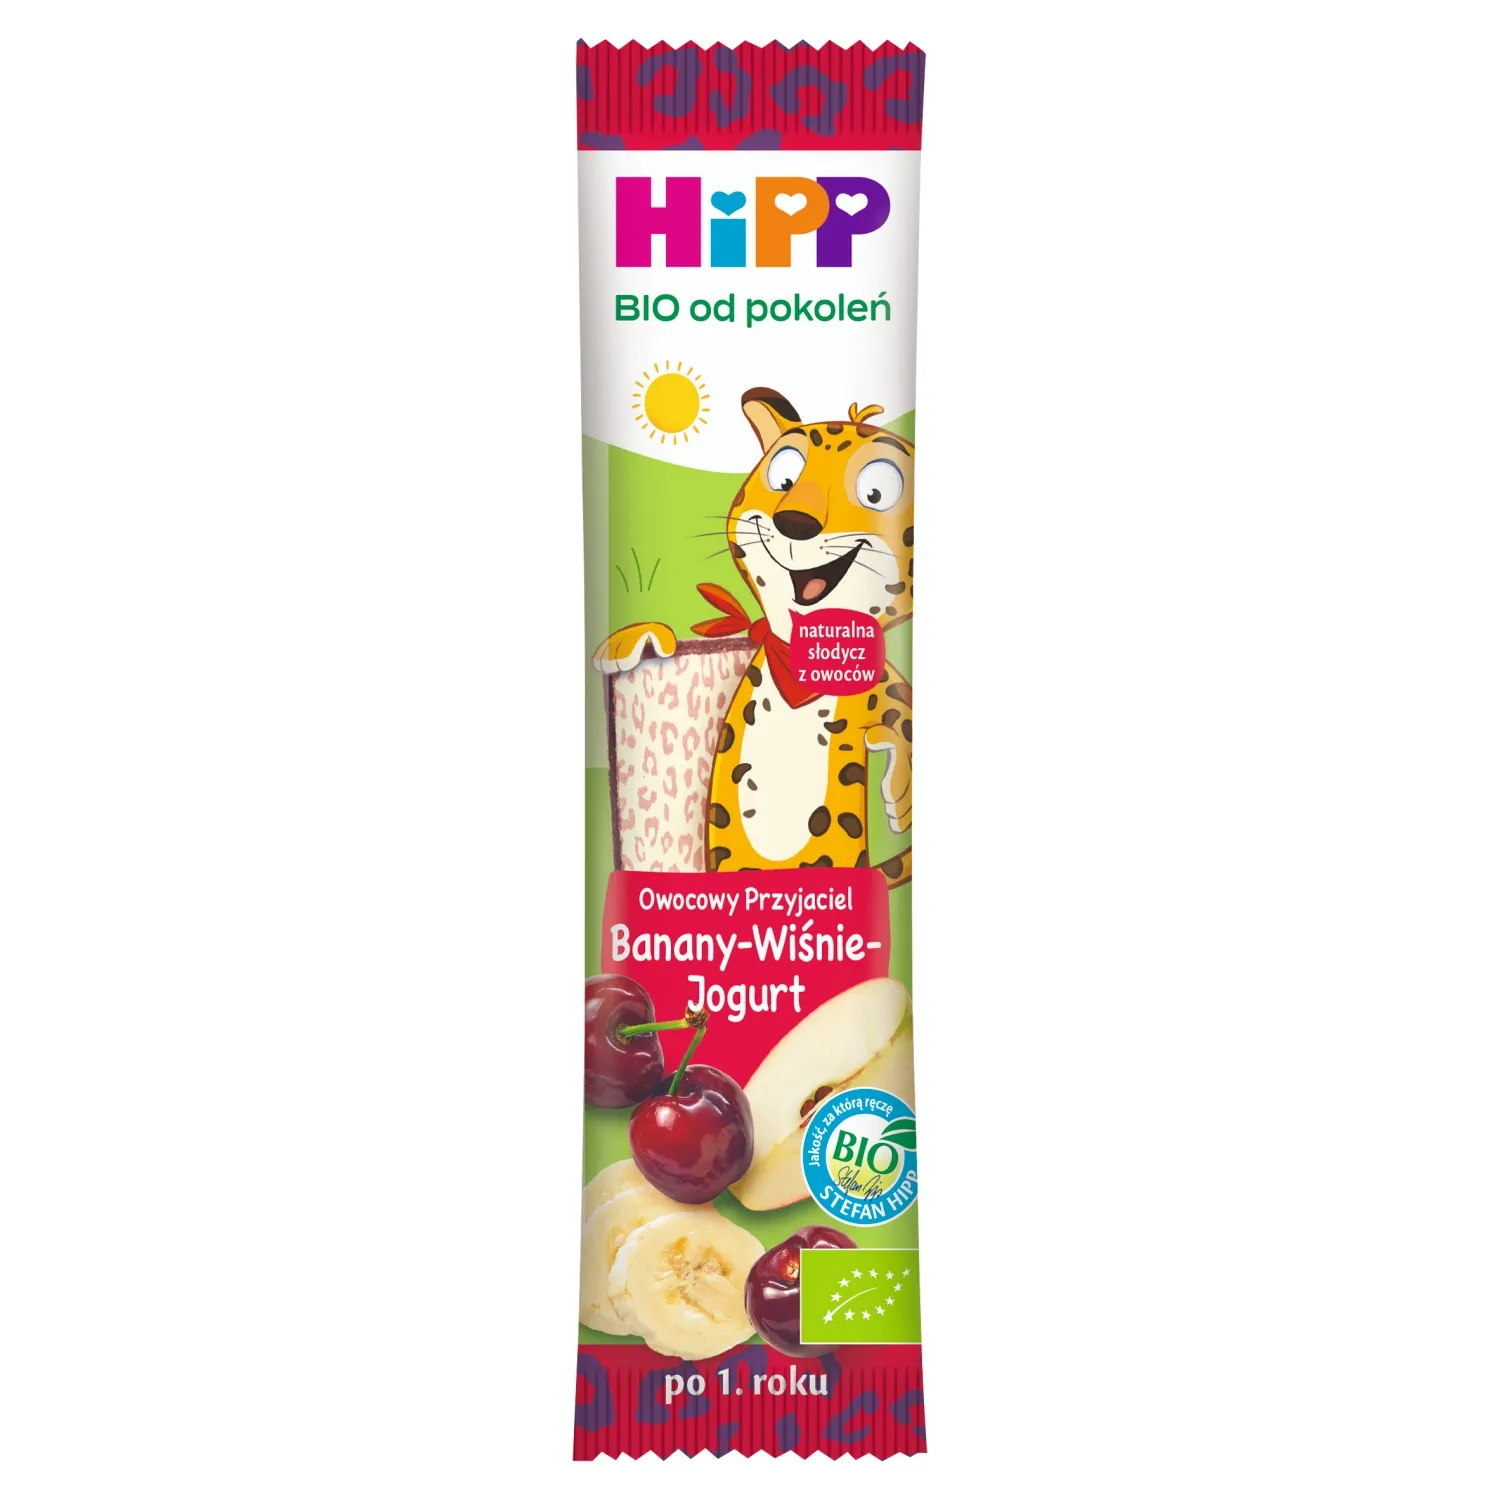 HiPP BIO od pokoleń batonik Owocowy Przyjaciel banany wiśnie jogurt po 1. roku, 23 g